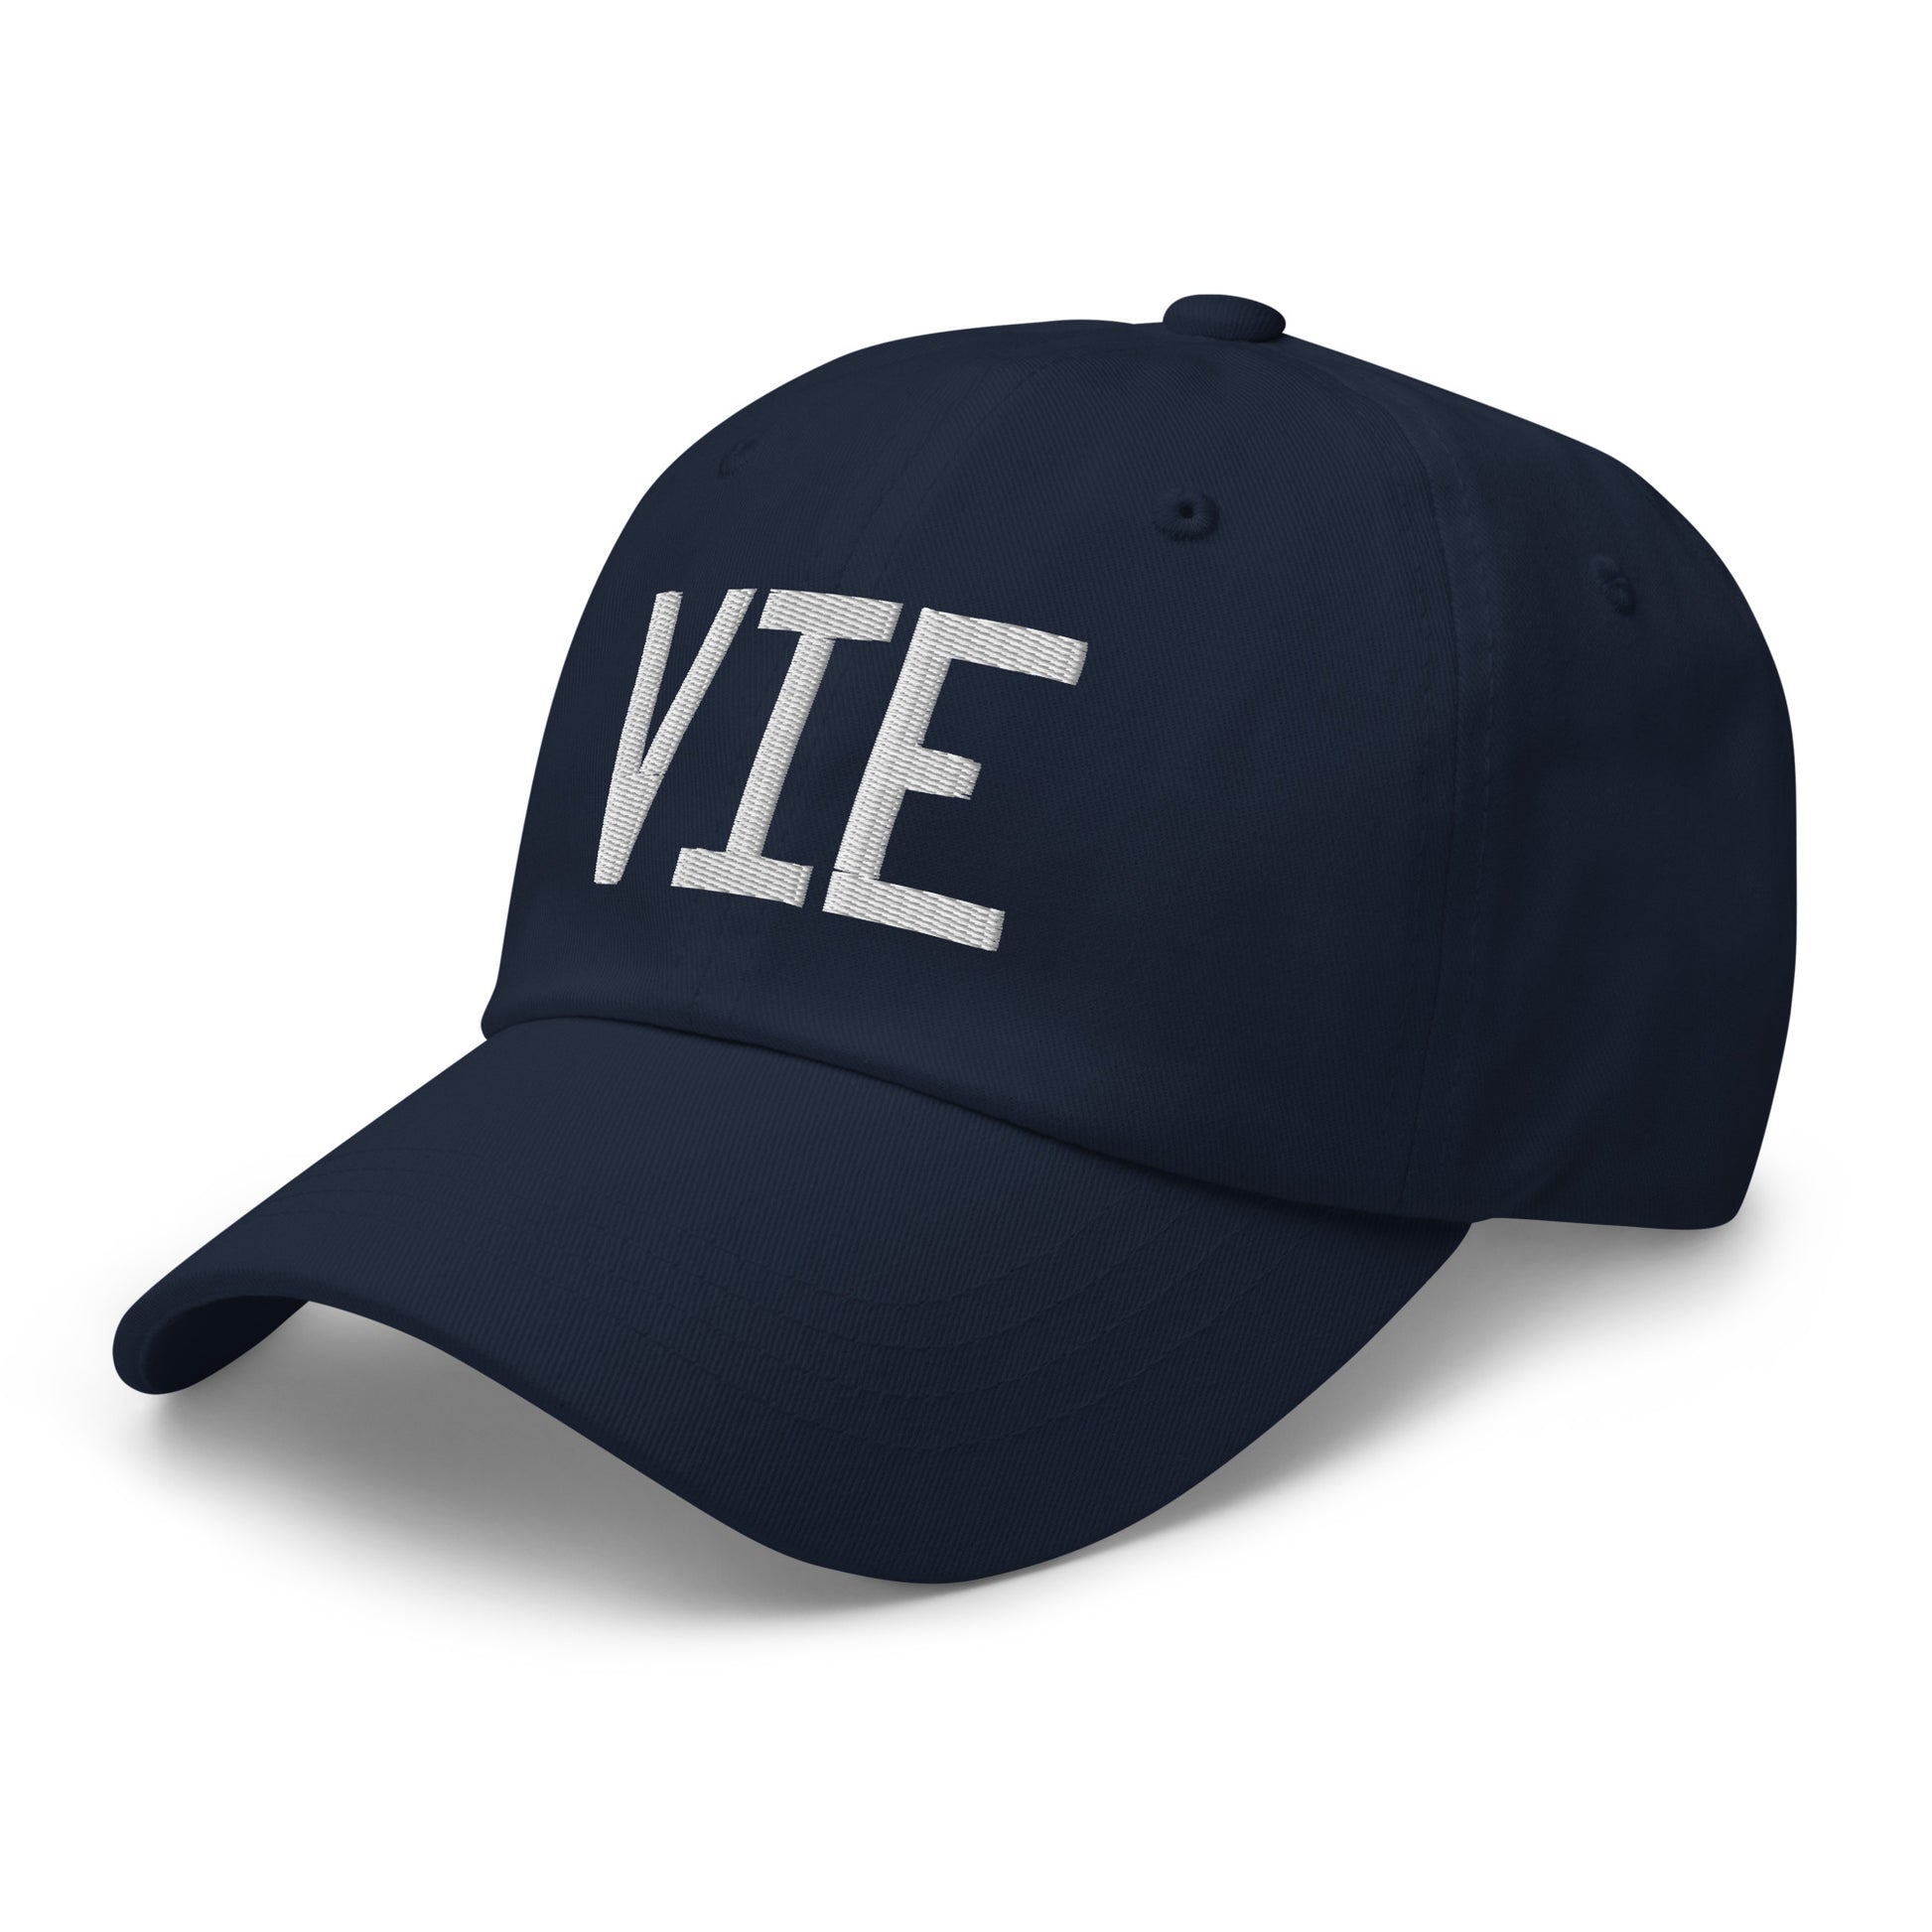 Airport Code Baseball Cap - White • VIE Vienna • YHM Designs - Image 18